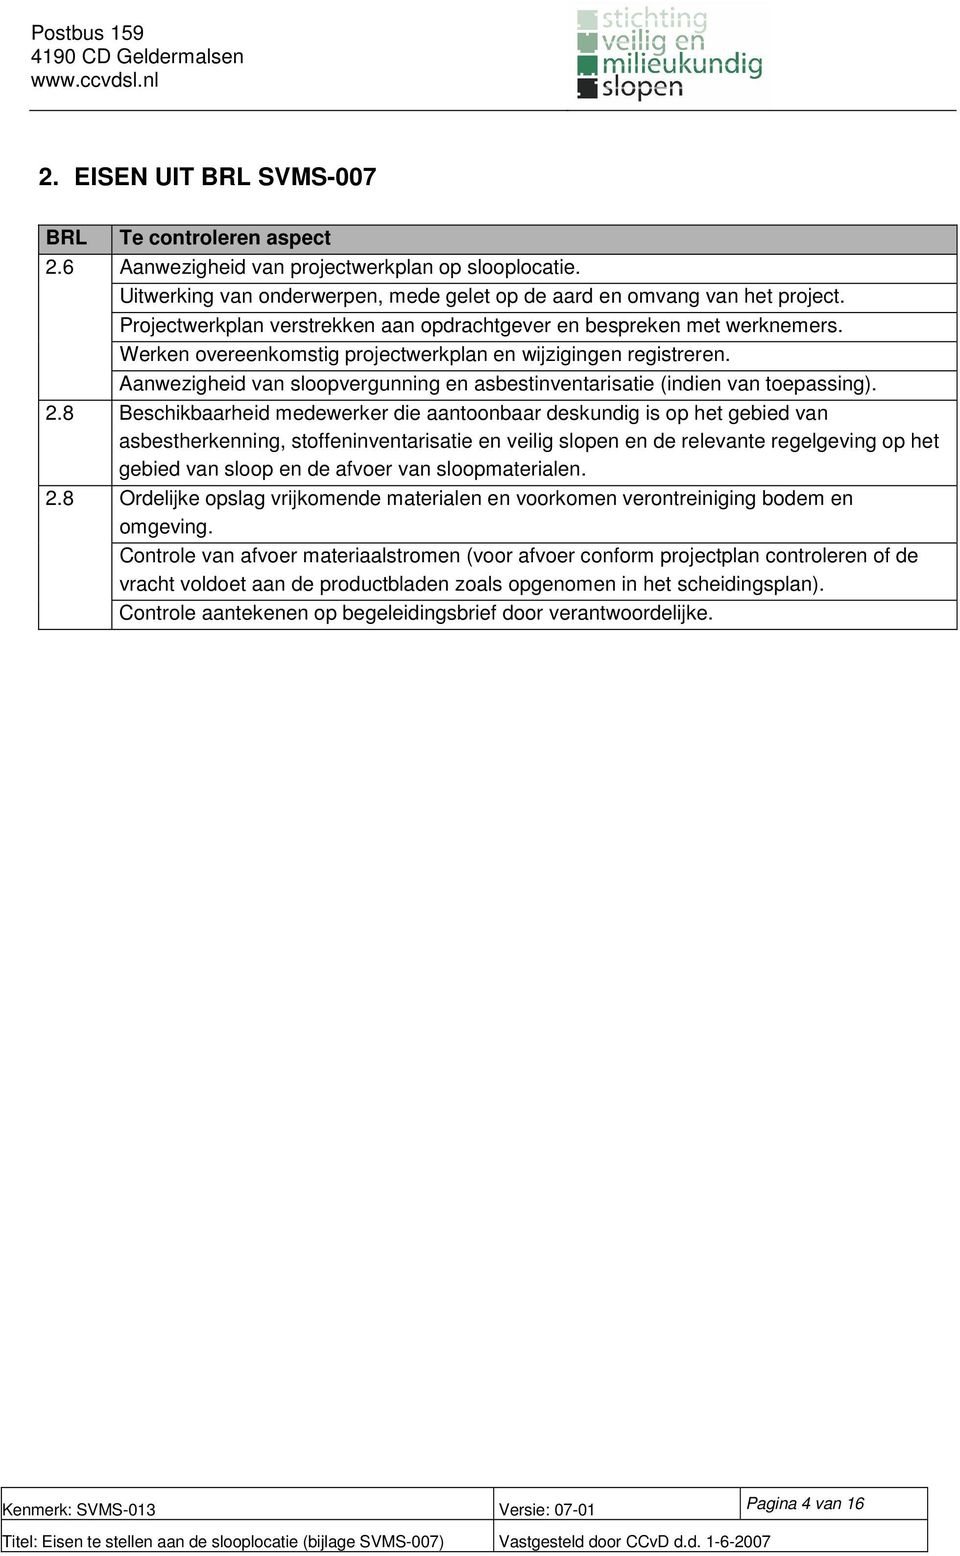 Aanwezigheid van sloopvergunning en asbestinventarisatie (indien van toepassing). 2.